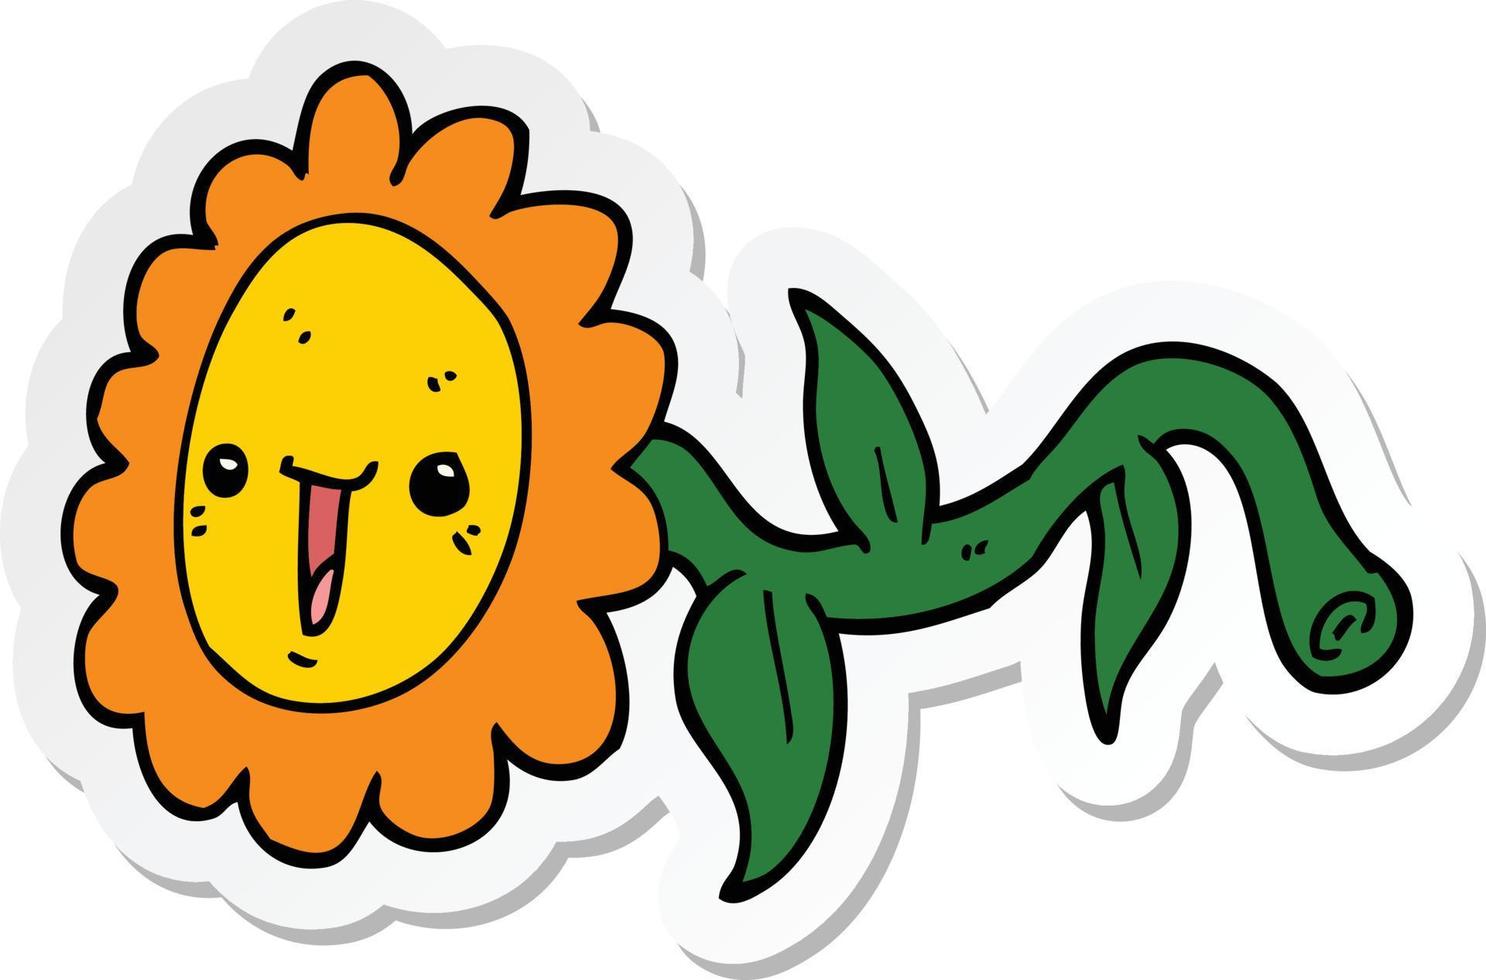 pegatina de una flor de dibujos animados vector